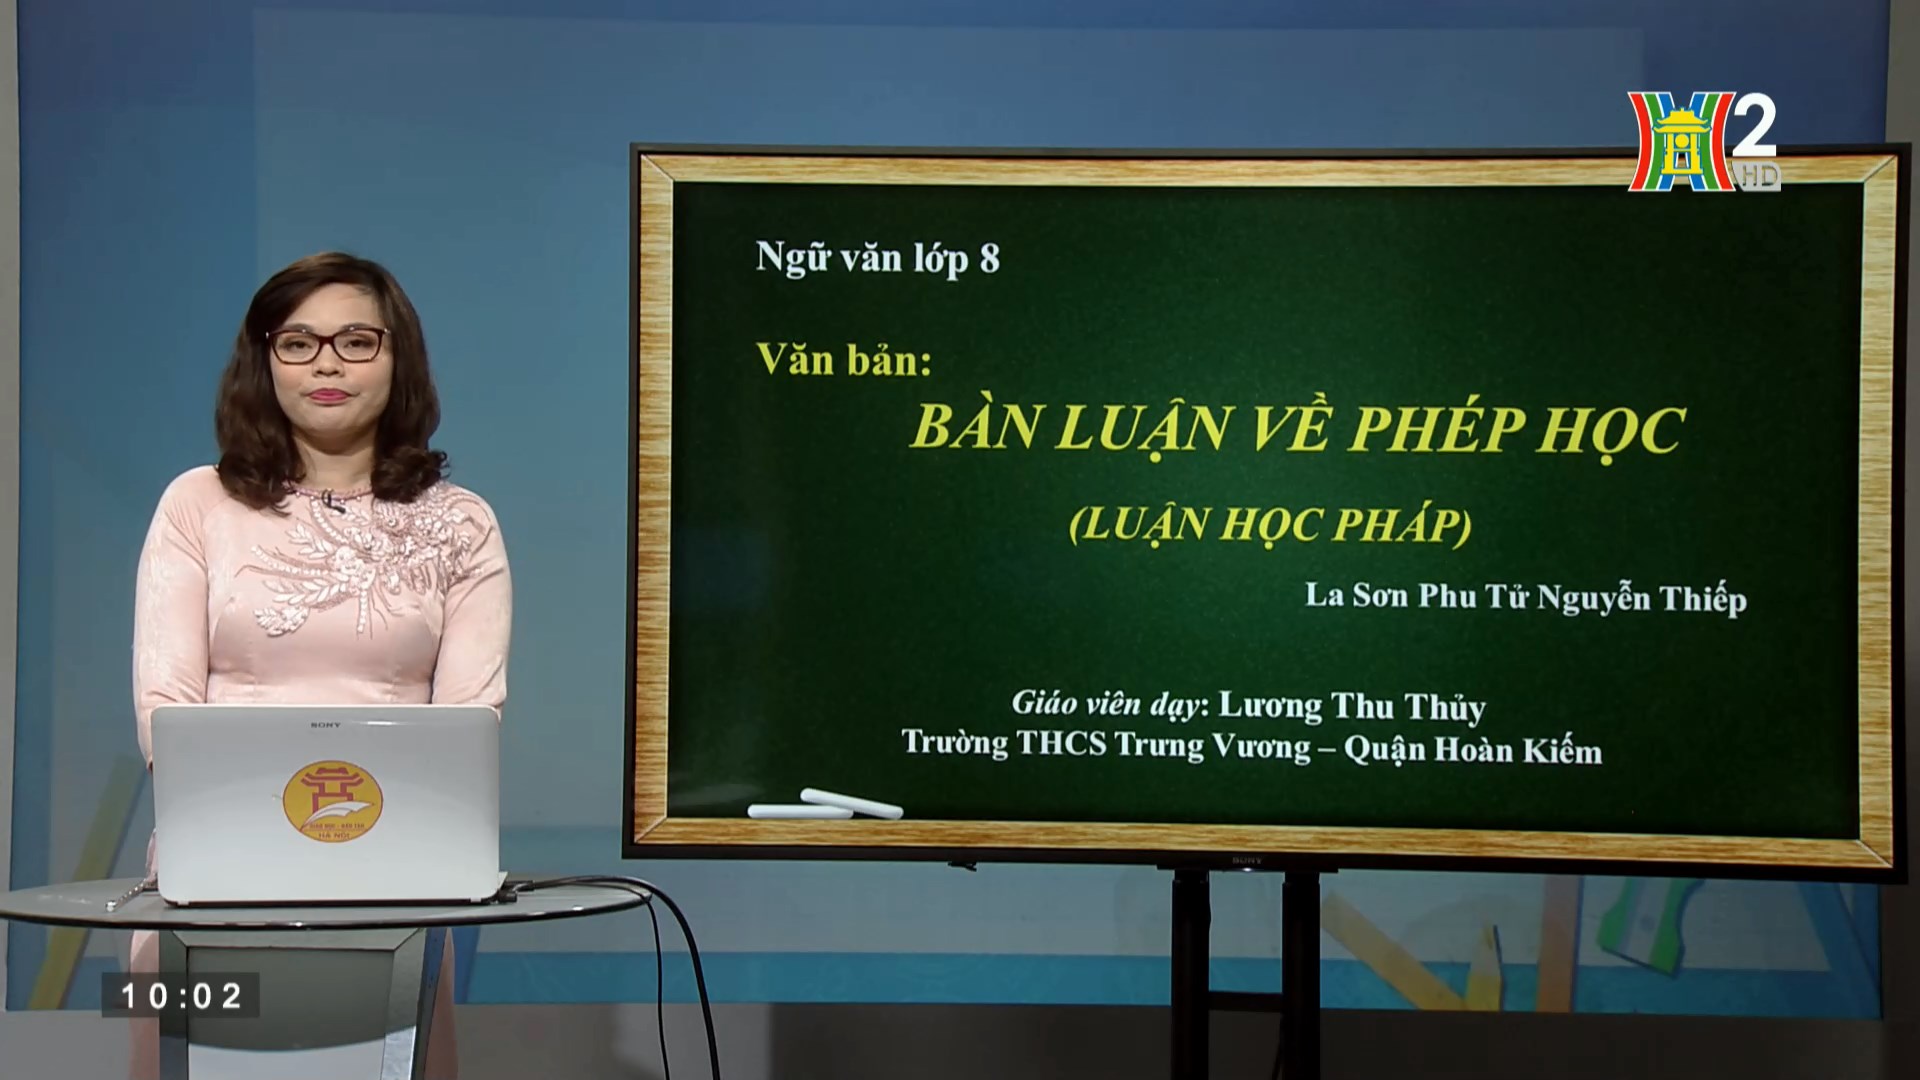 Ngữ văn lớp 8. Bàn luận về phép học (Luận học pháp) (La Sơn Phu tử _ Nguyễn Thiếp) (10h00 ngày 02/05/2020)